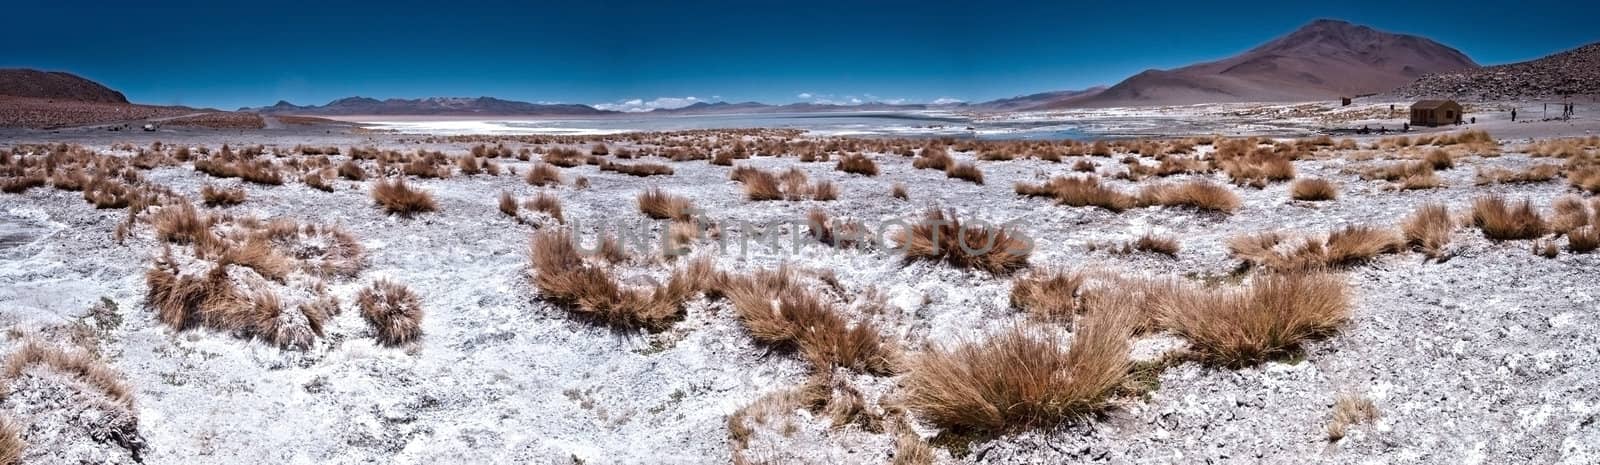 Desert Panoramic by urmoments